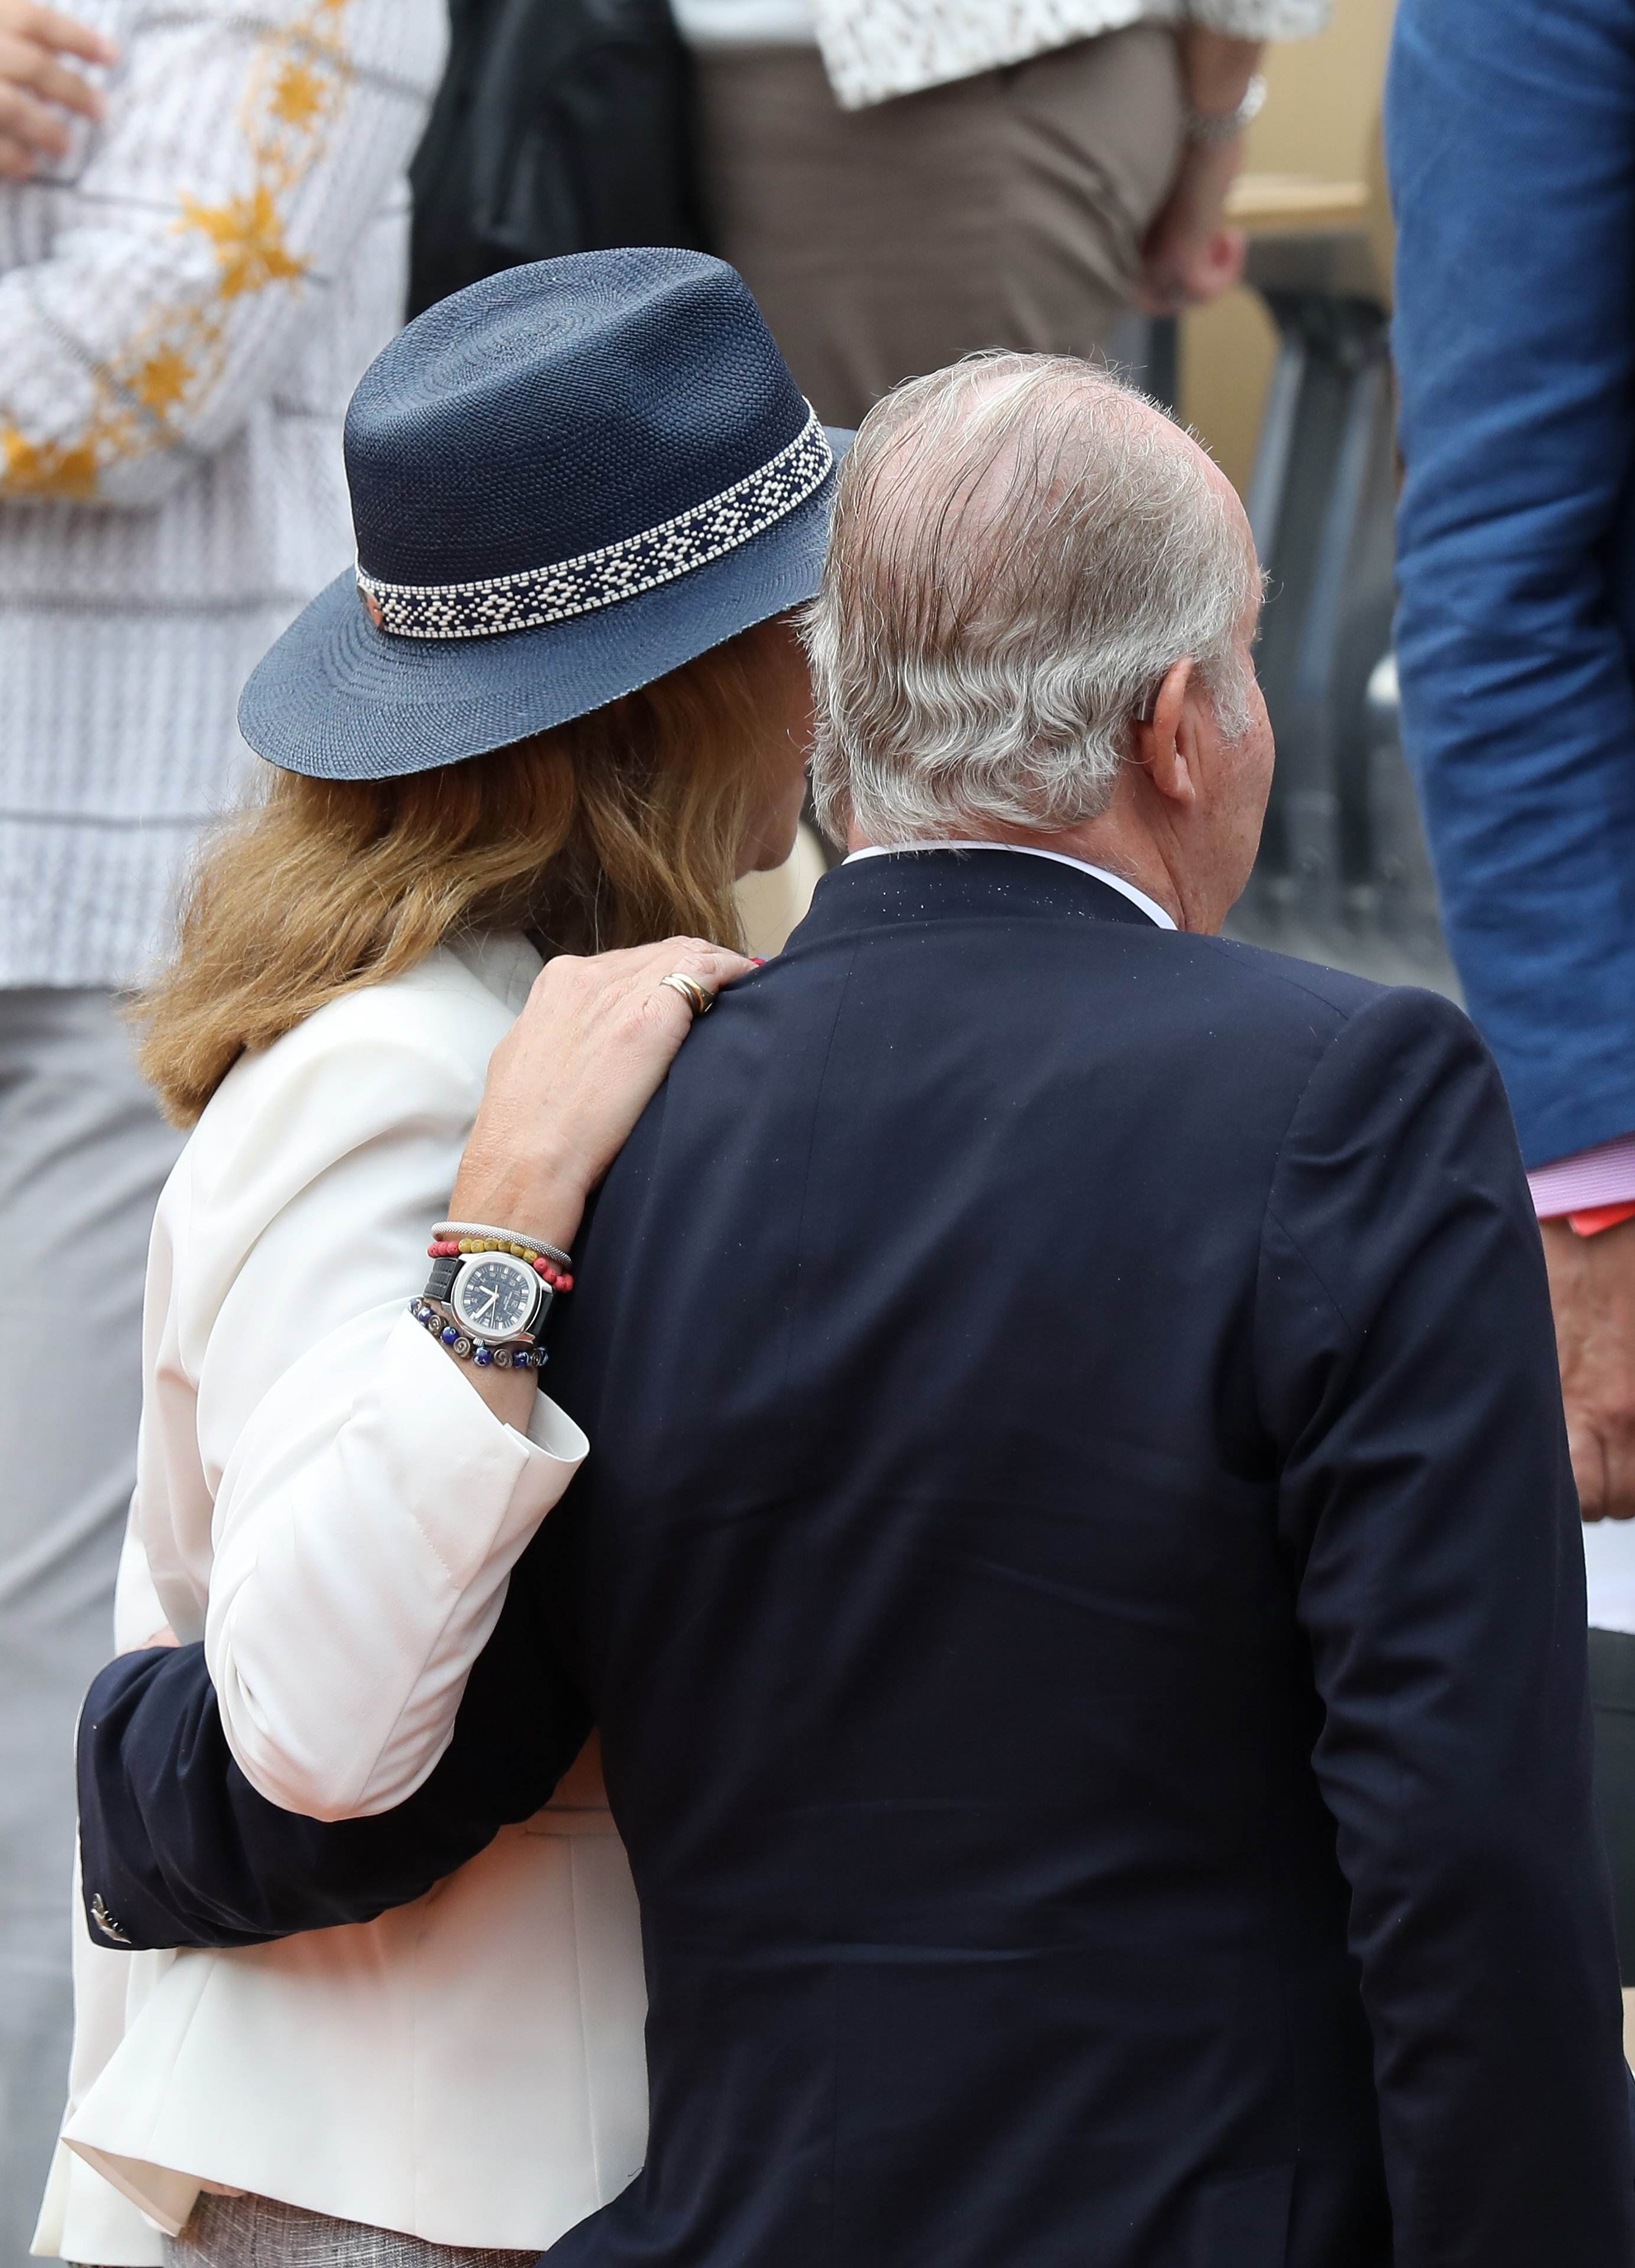 Juan Carlos y su hija, gordo, decrépito, y responde estúpido: imagen pésima en Wight